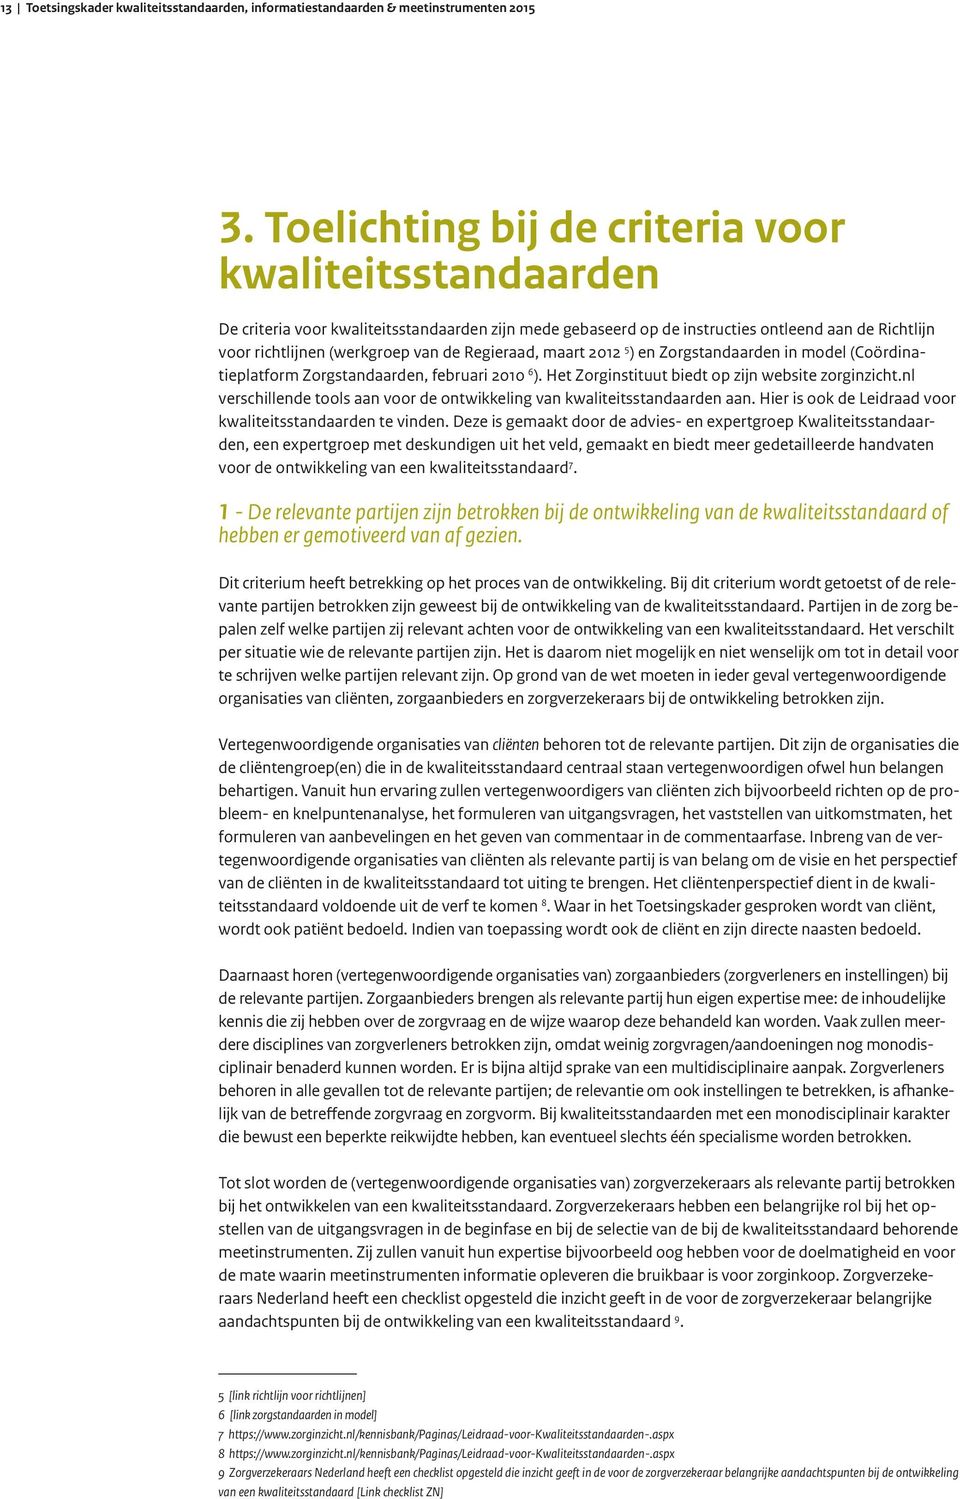 Regieraad, maart 2012 5 ) en Zorgstandaarden in model (Coördinatieplatform Zorgstandaarden, februari 2010 6 ). Het Zorginstituut biedt op zijn website zorginzicht.